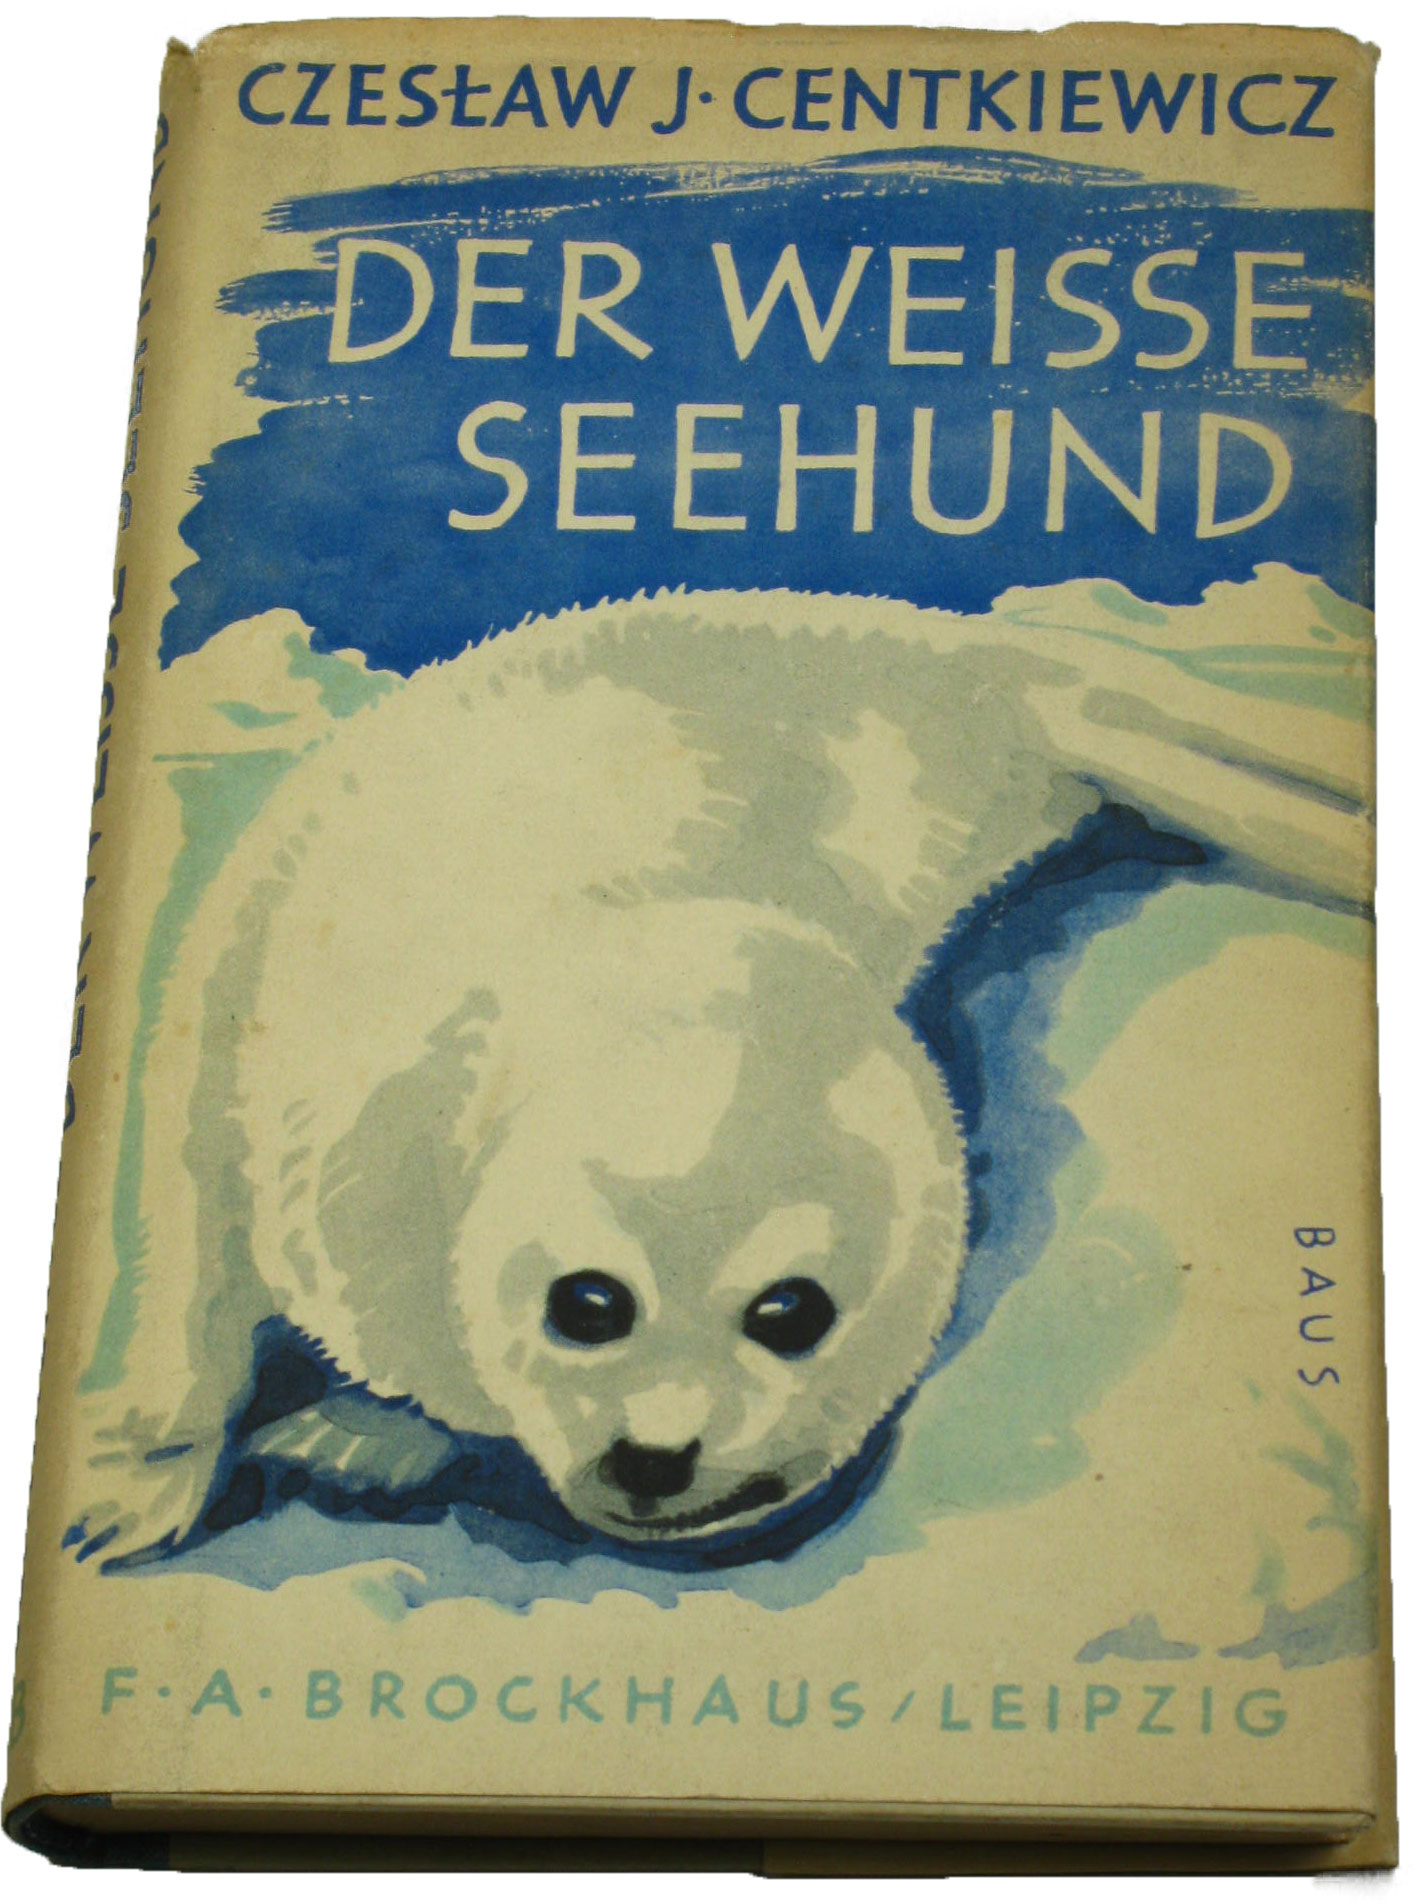 Centkiewicz, Czeslaw J.:  Der weisse Seehund 